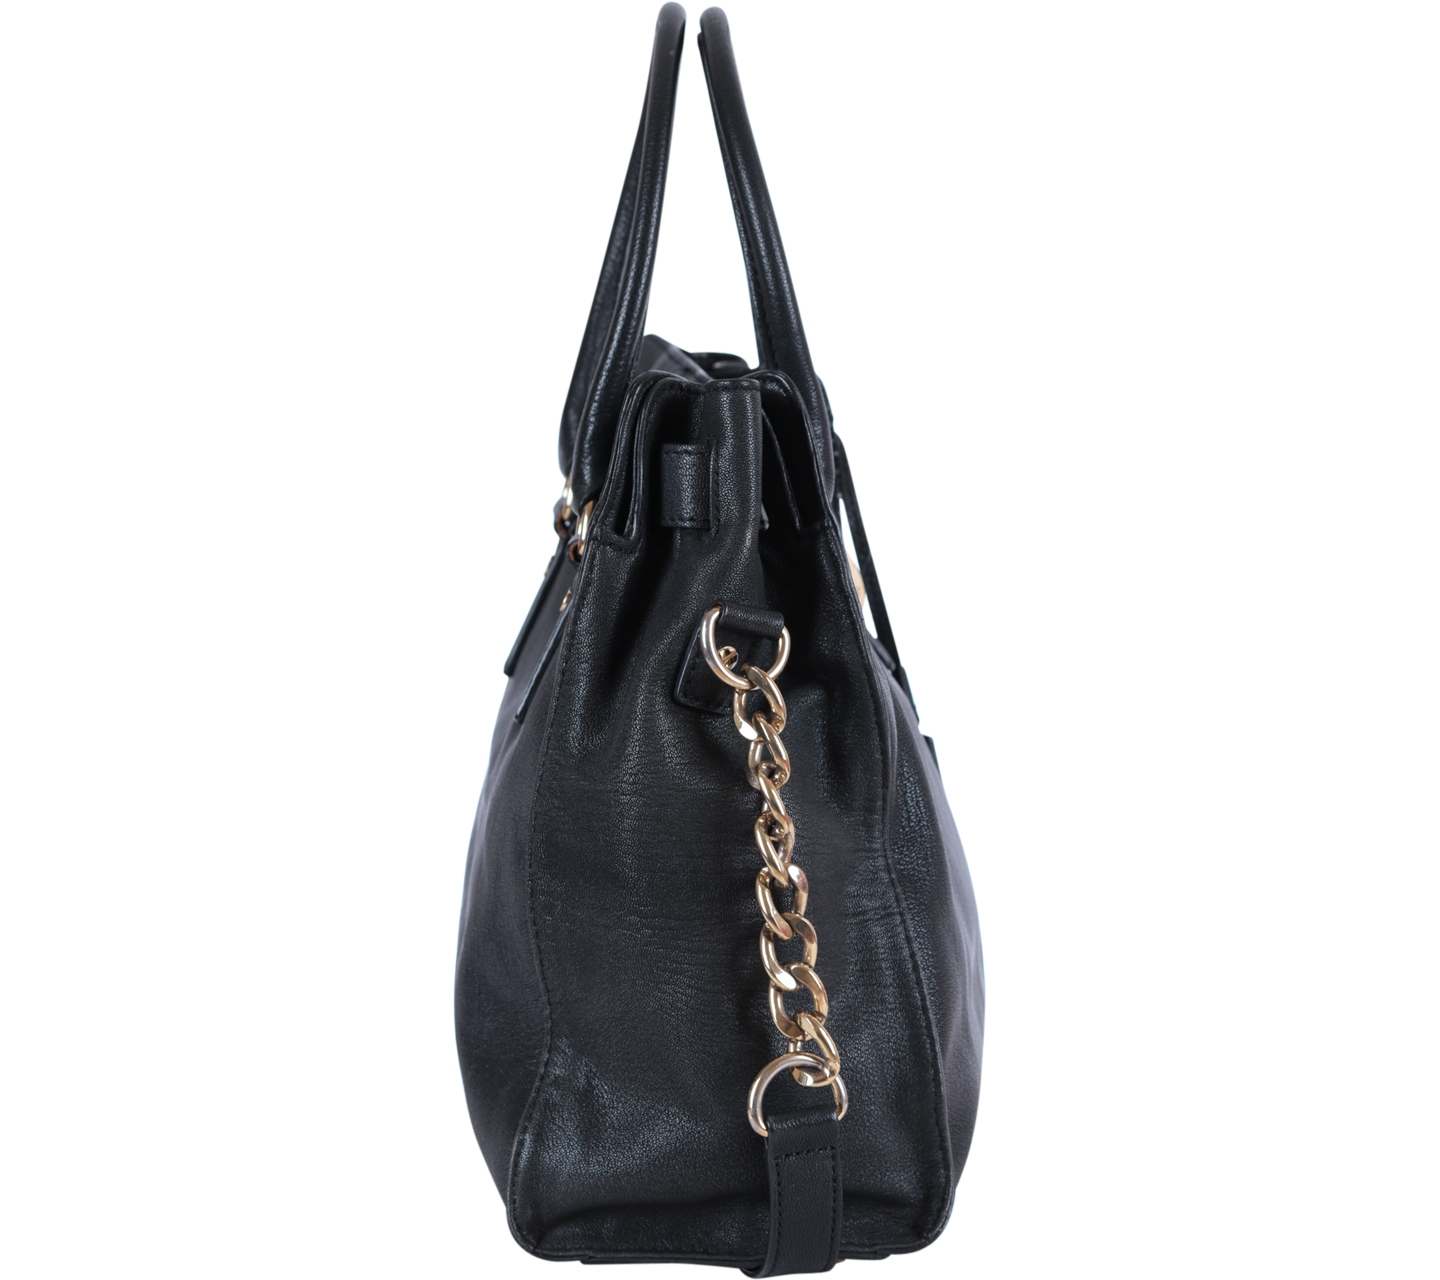 Michael Kors Black Leather Shoulder Bag